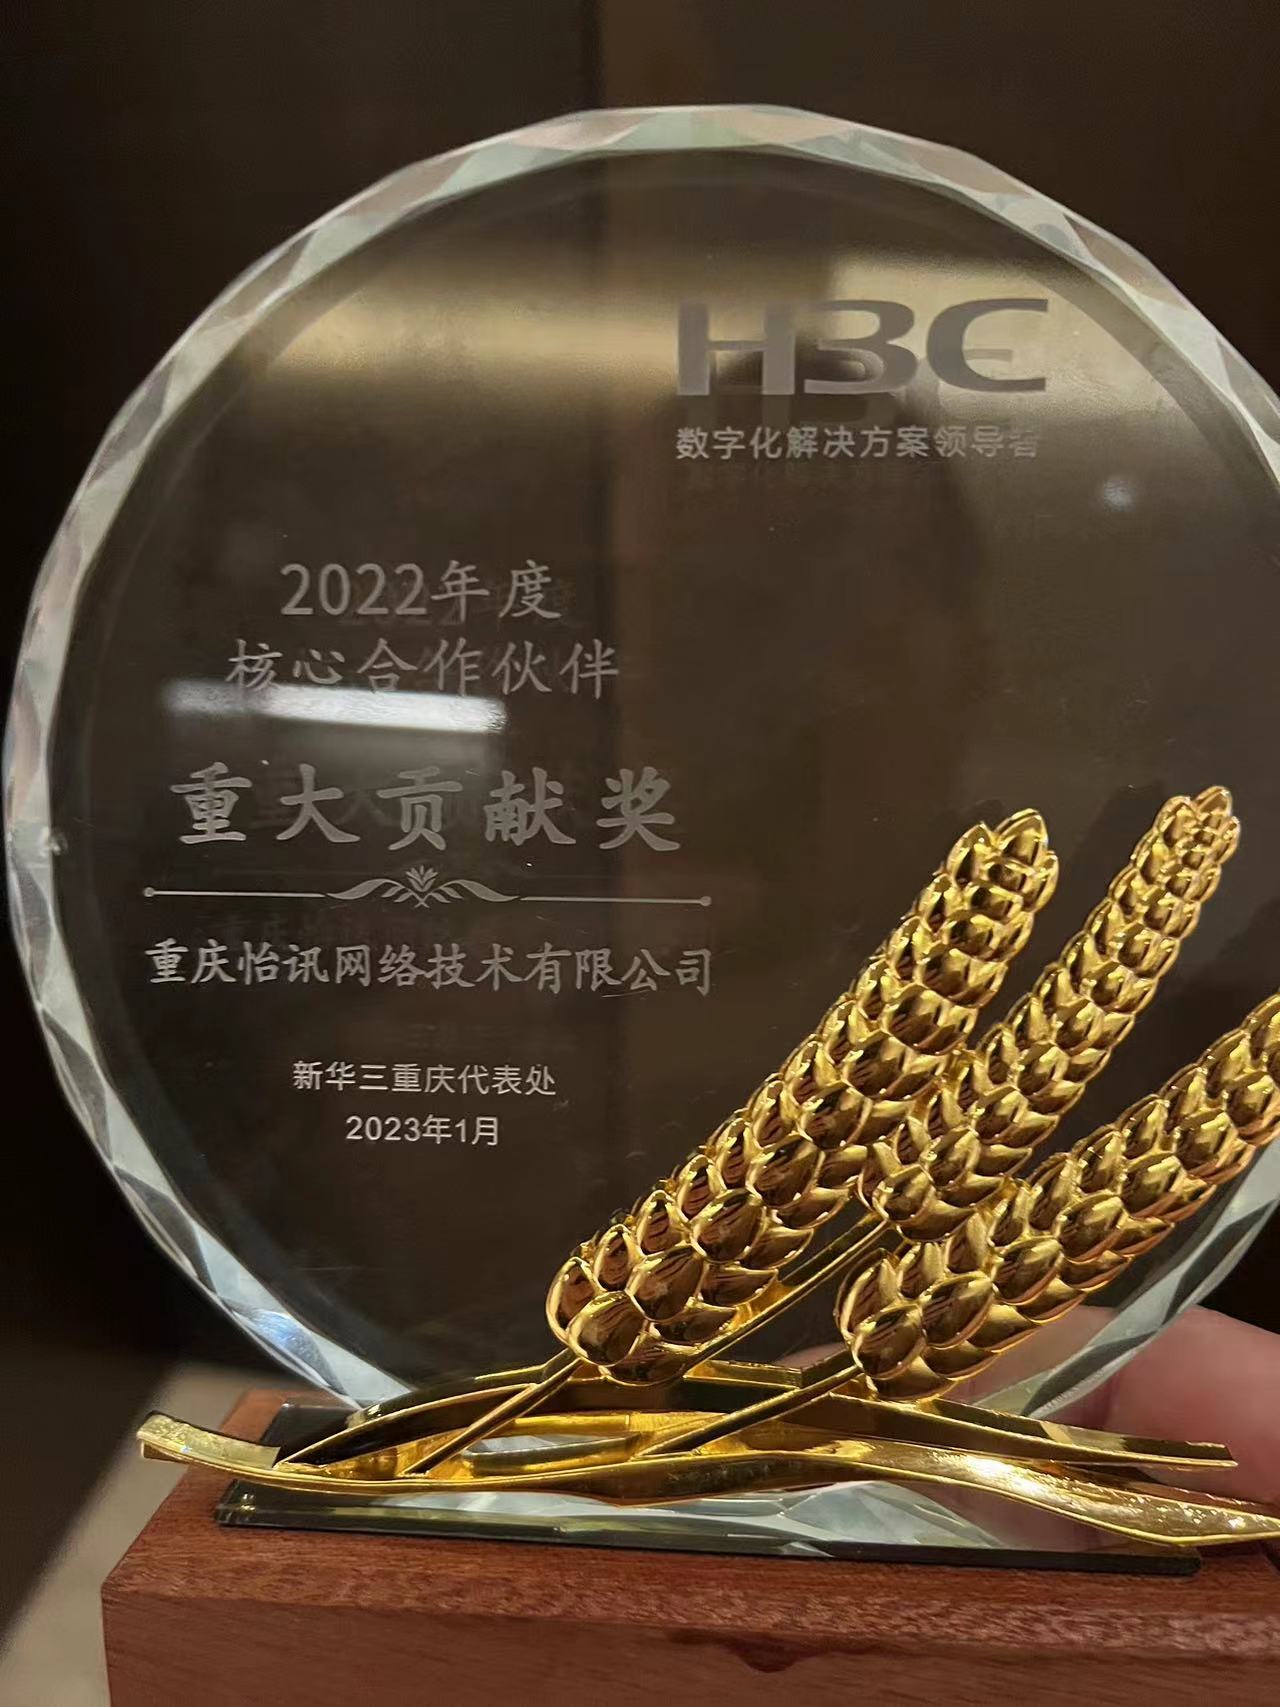 我公司荣获H3C颁发的“合作伙伴重大贡献奖”(图1)